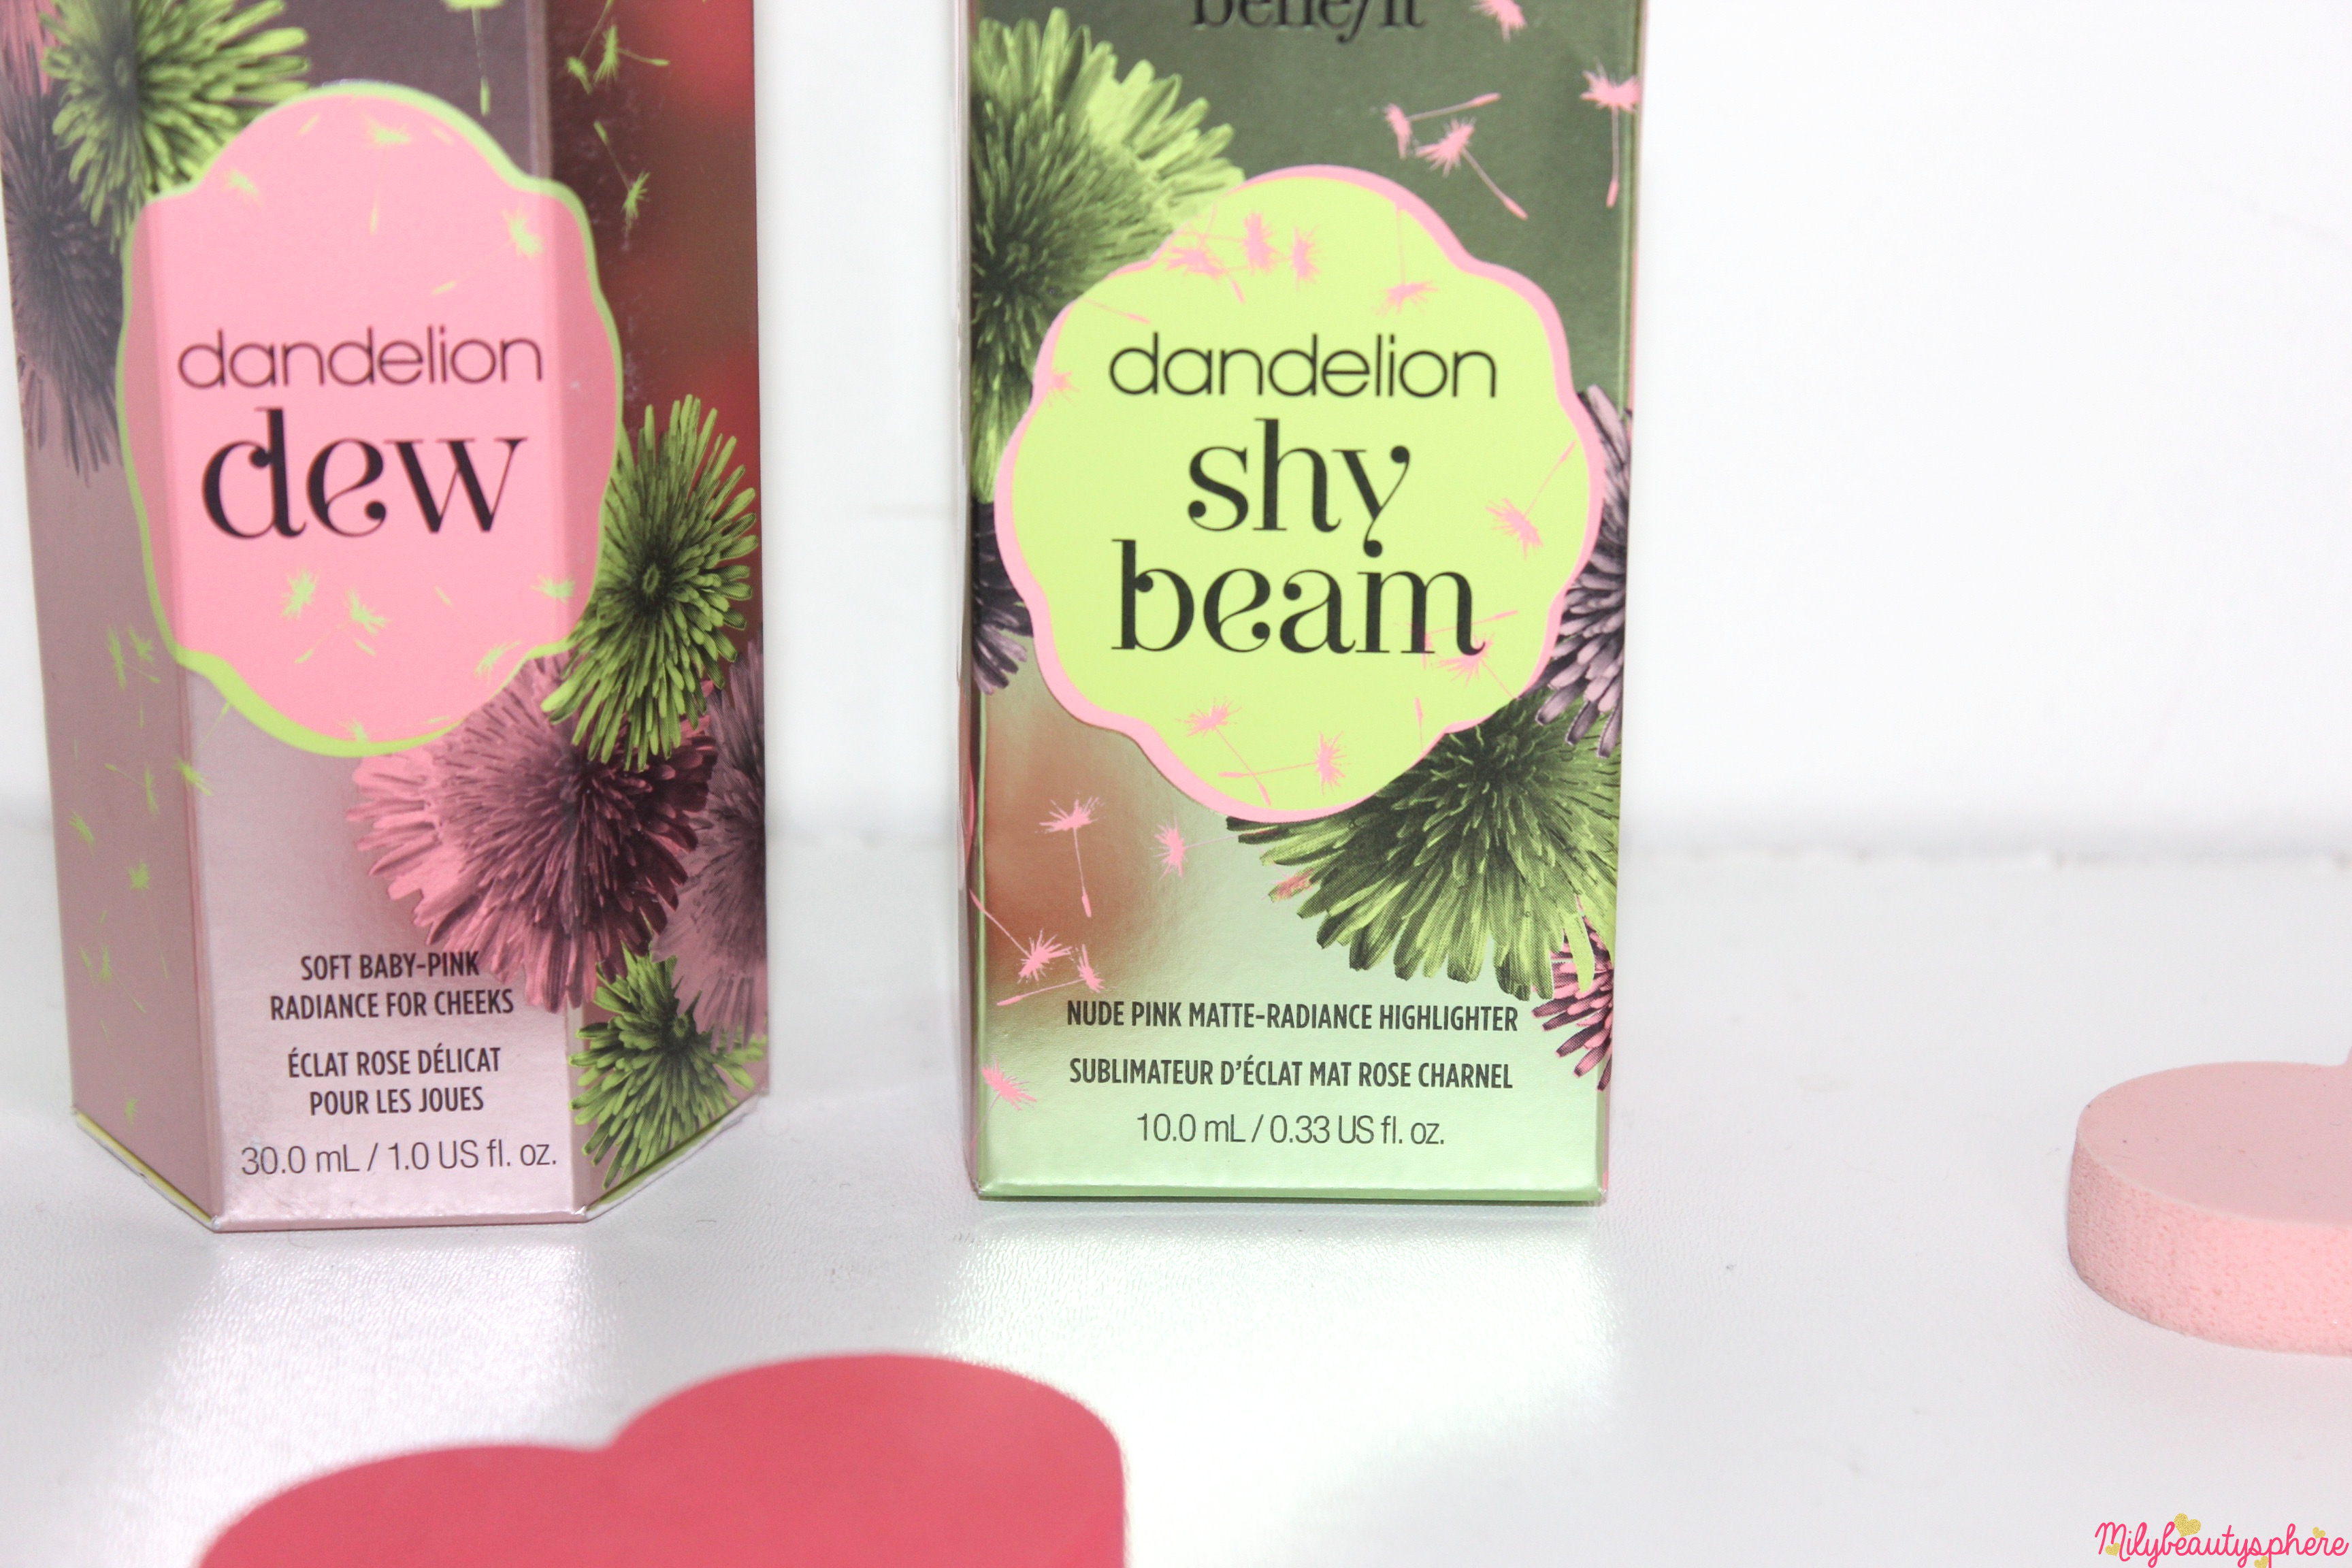 Dandelion Nude Pink Make Up Benefit Milybeautysphere